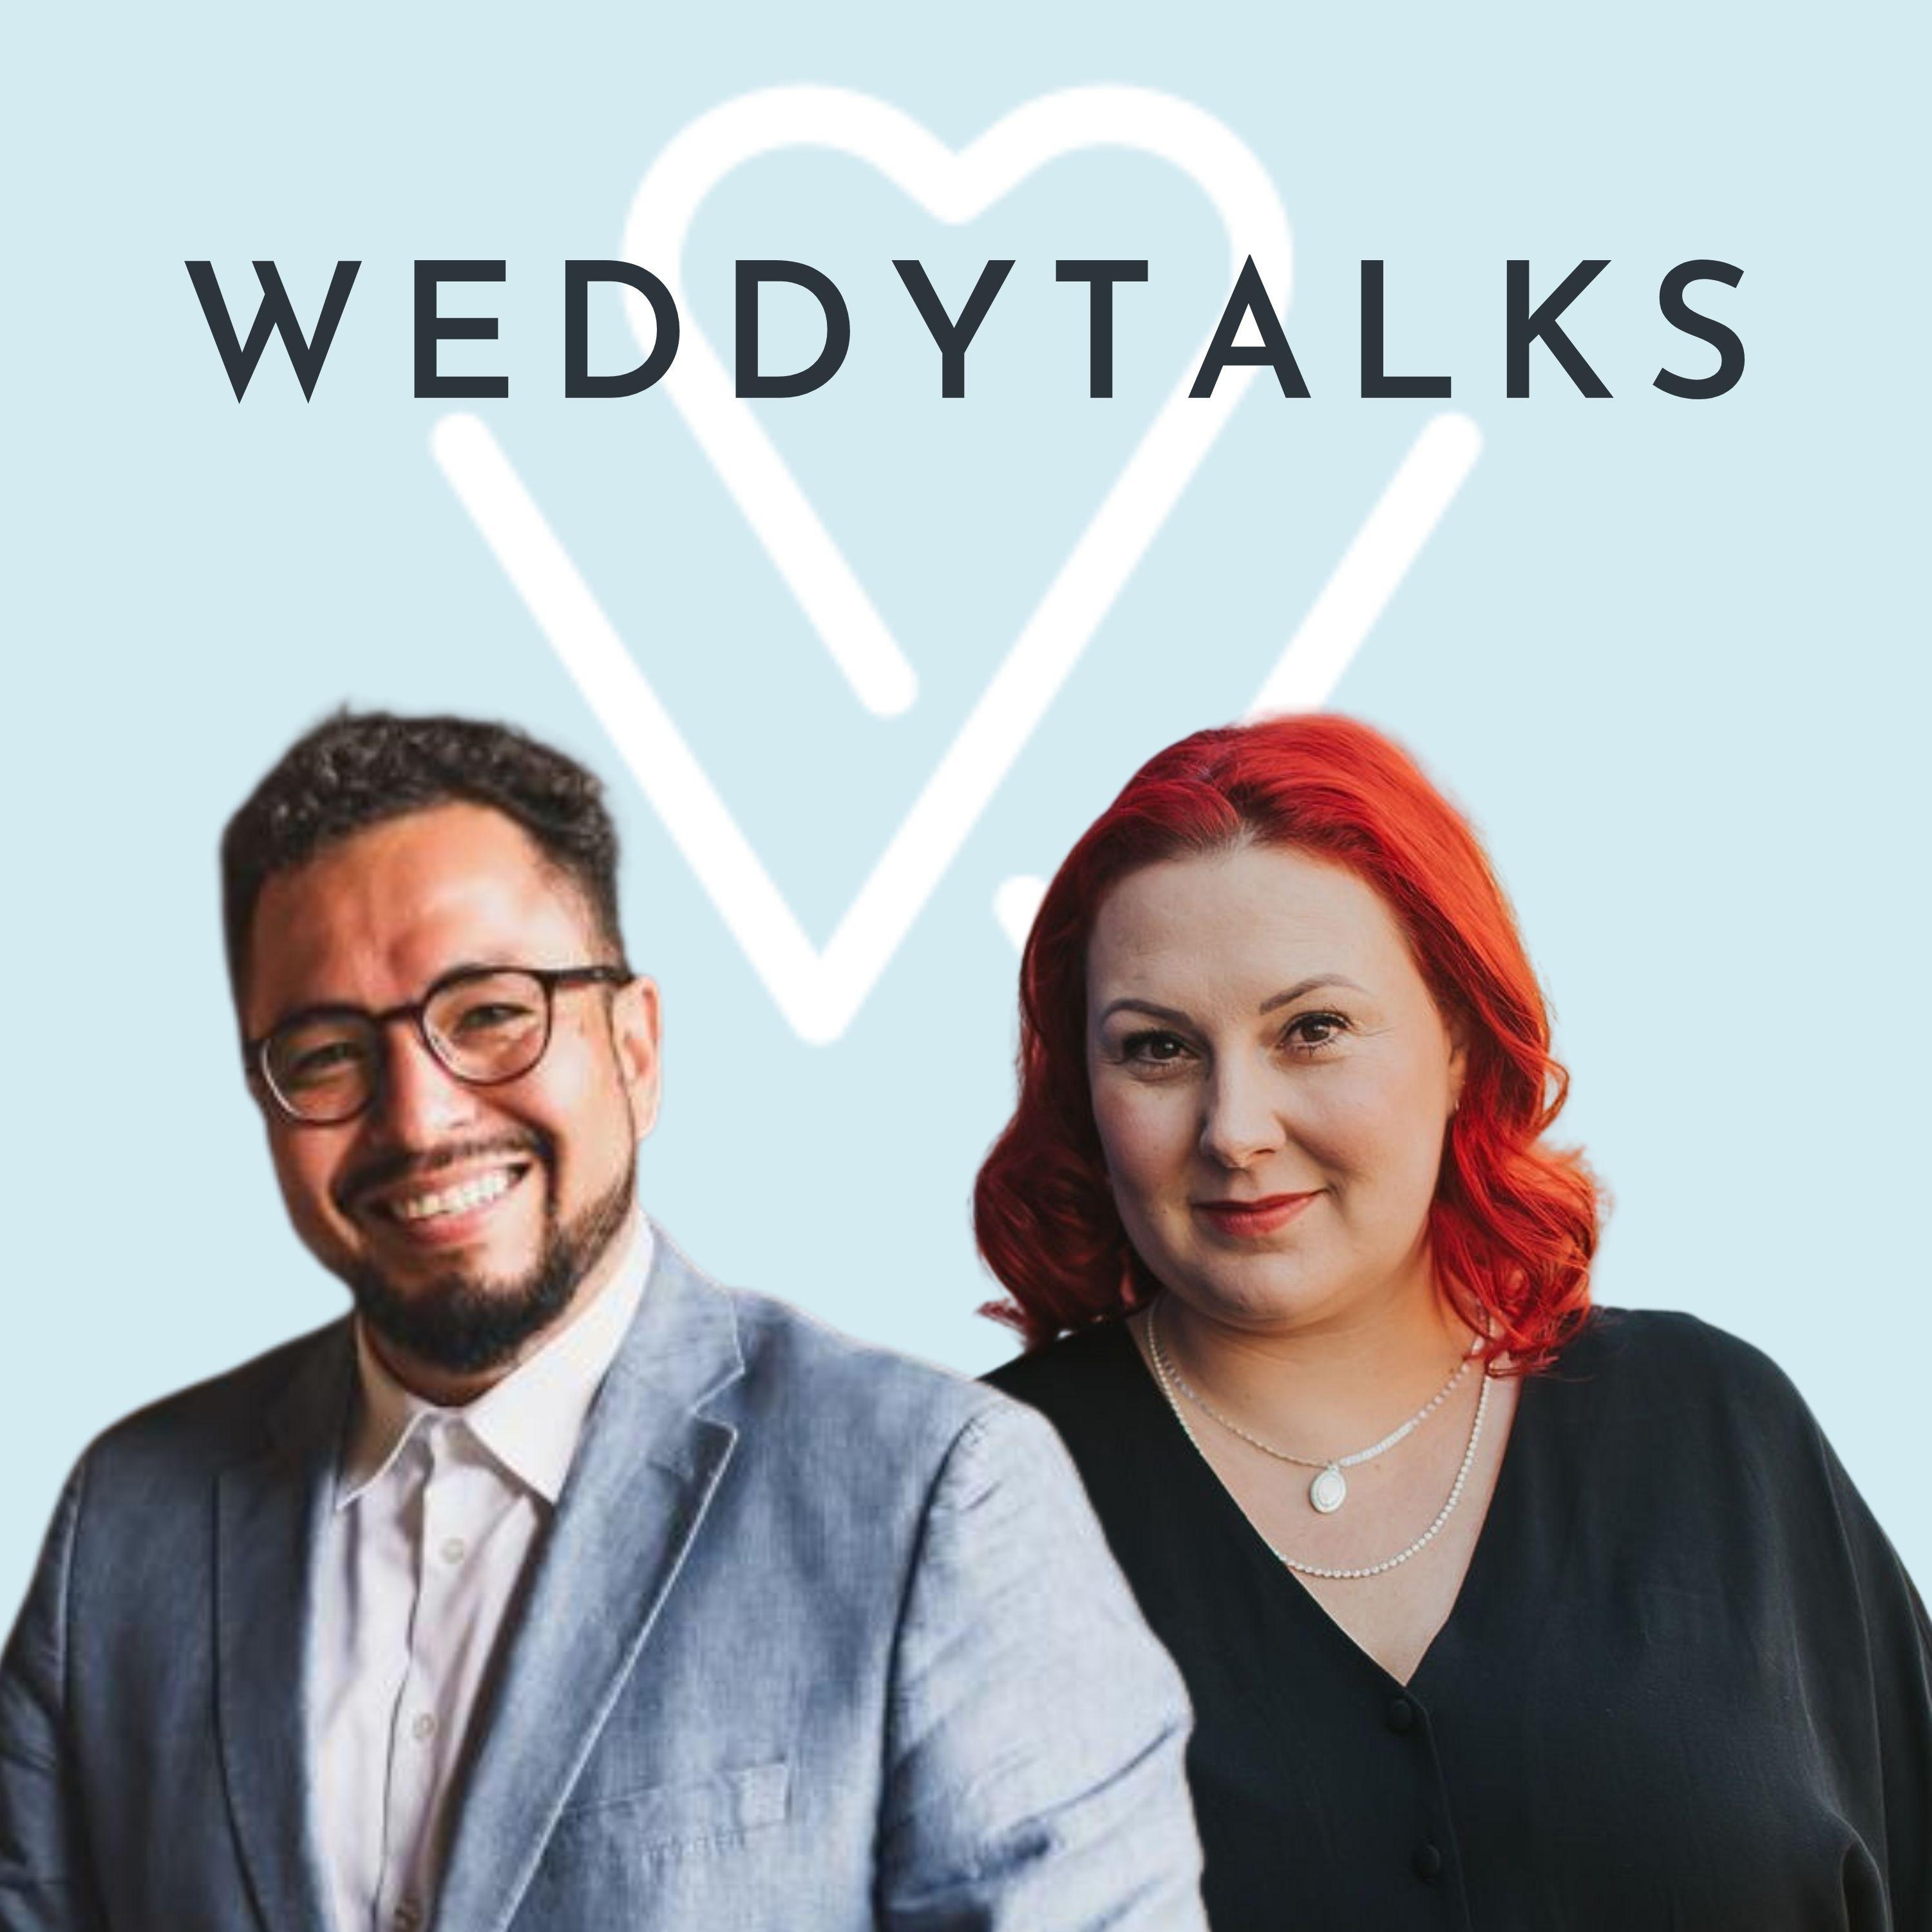 Zwei Personen stehen vor einem blauen Hintergrund mit den Worten Weddytalks.